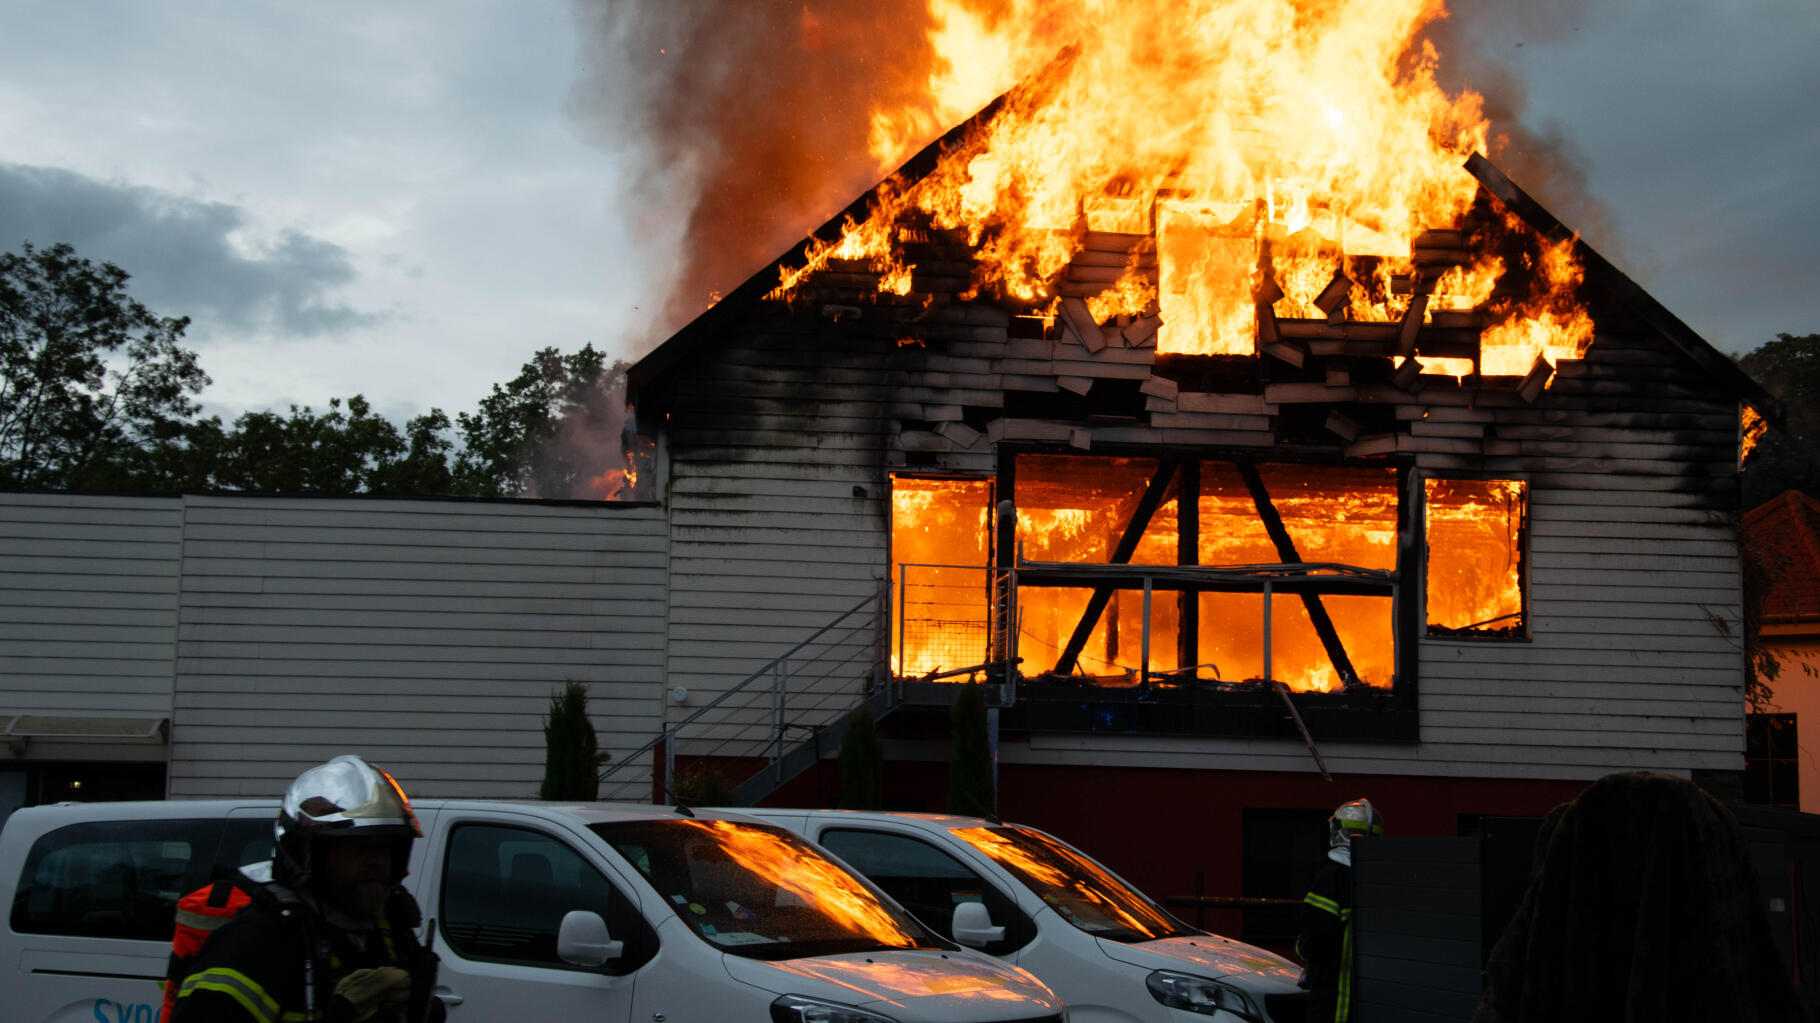 Ce que dit le rapport d’enquête sur l’incendie mortel d’un gîte en Alsace